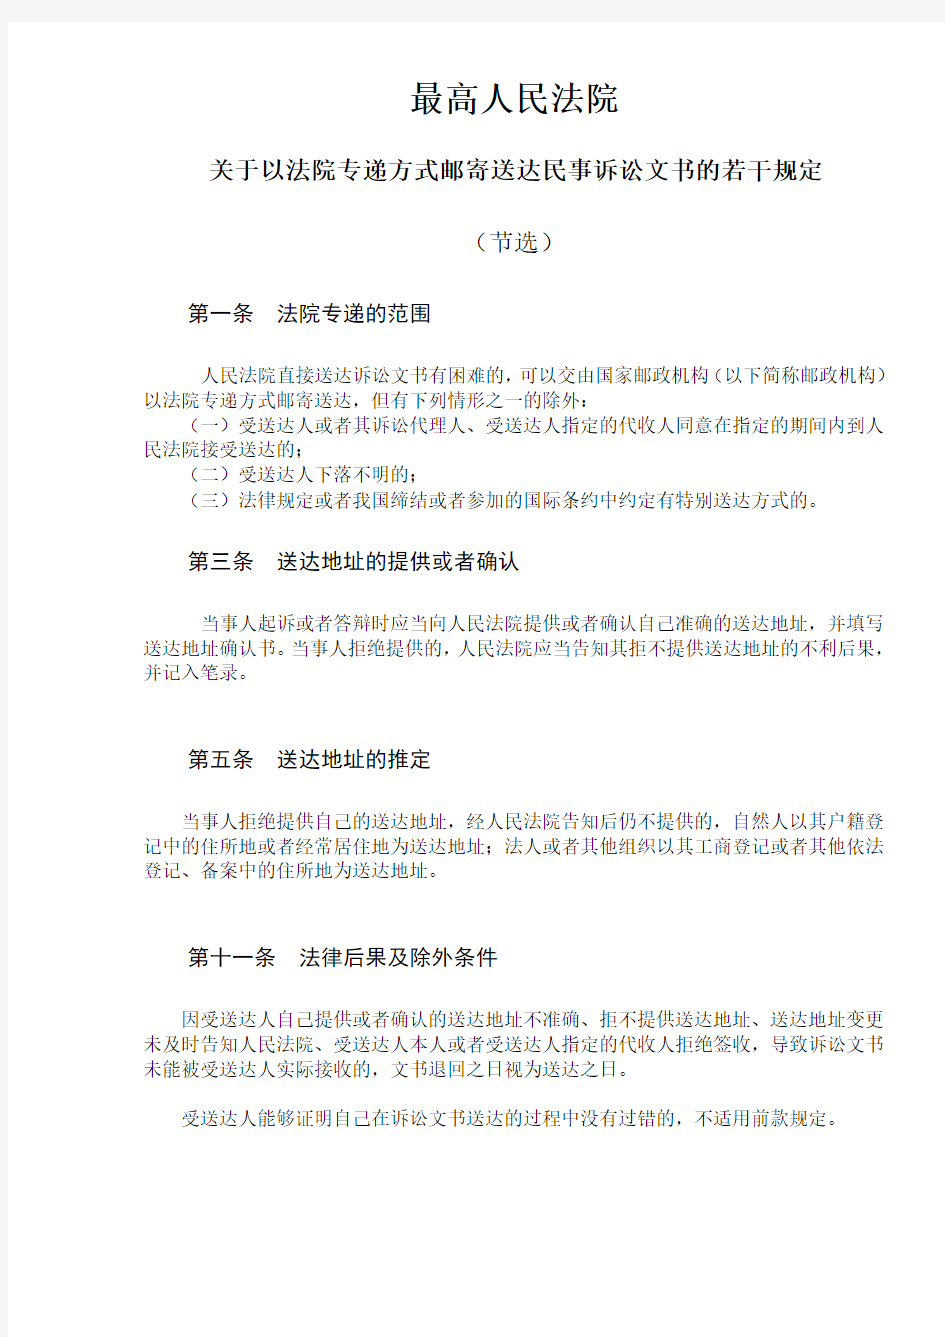 上海法院送达地址确认书